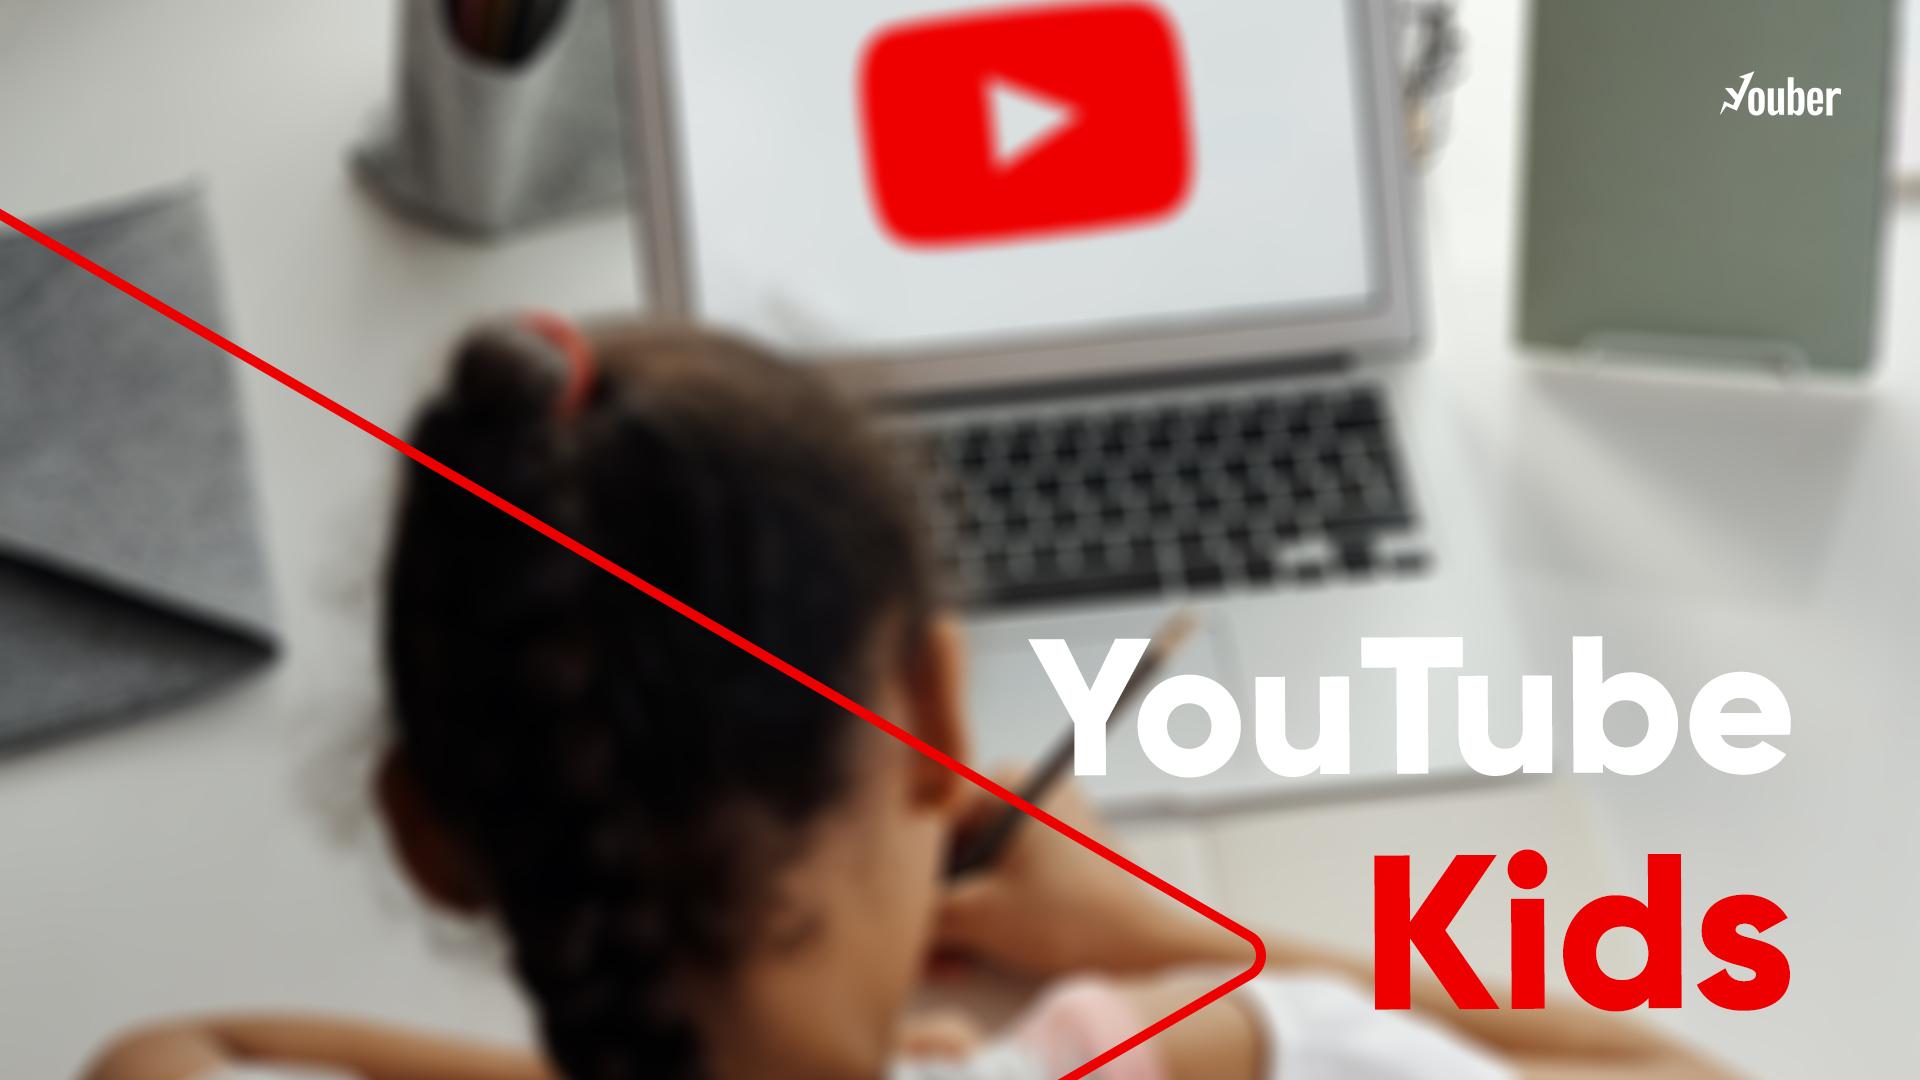 یوتیوب کیدز چیست؟ راهنمای کامل نحوه استفاده از یوتیوب کیدز